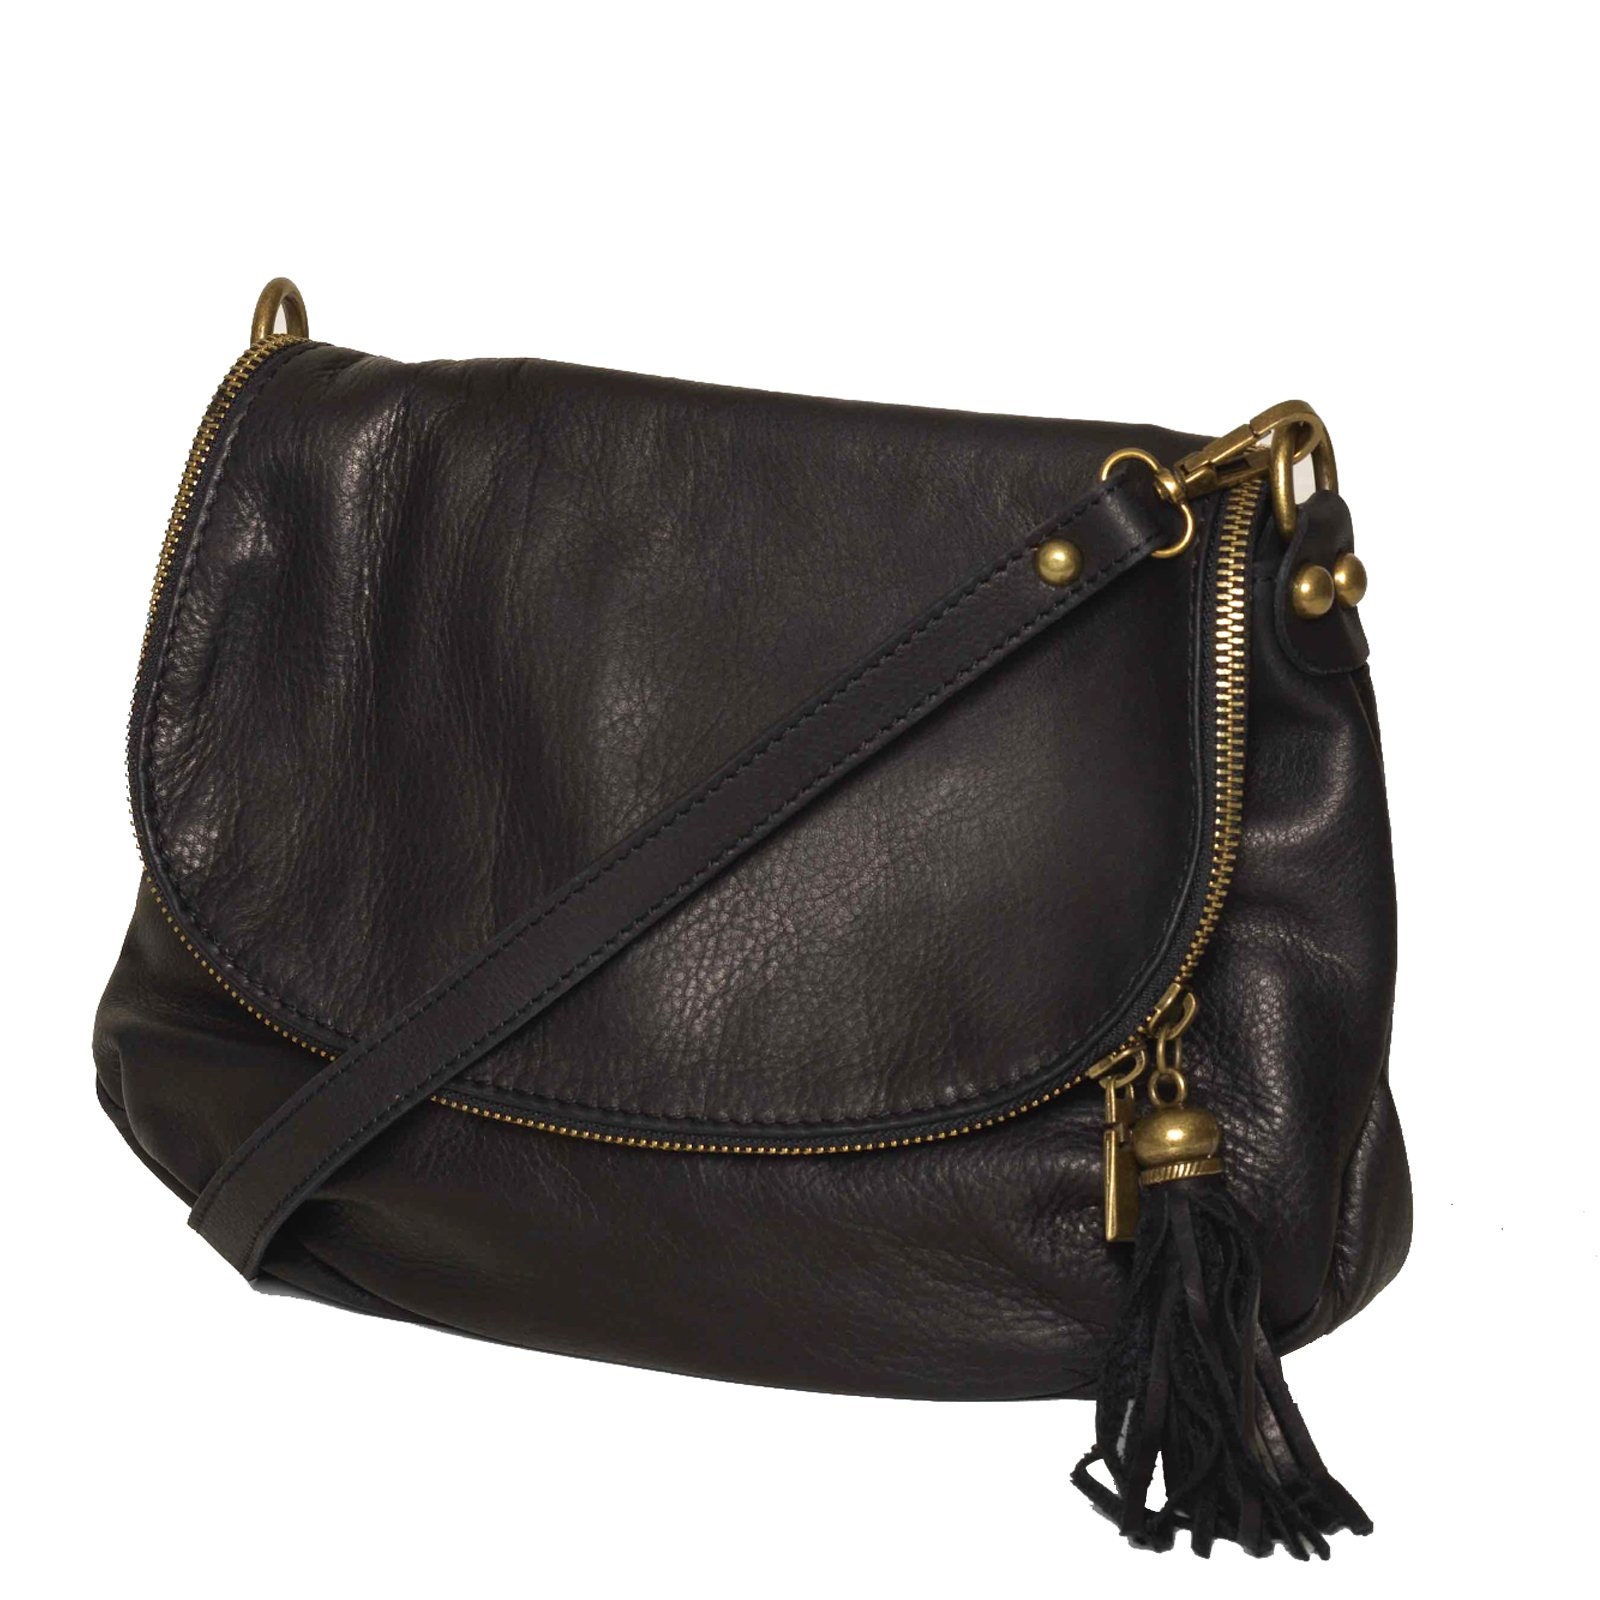 Vasarino Black Soft Leather Crossbody Bag - Etsy